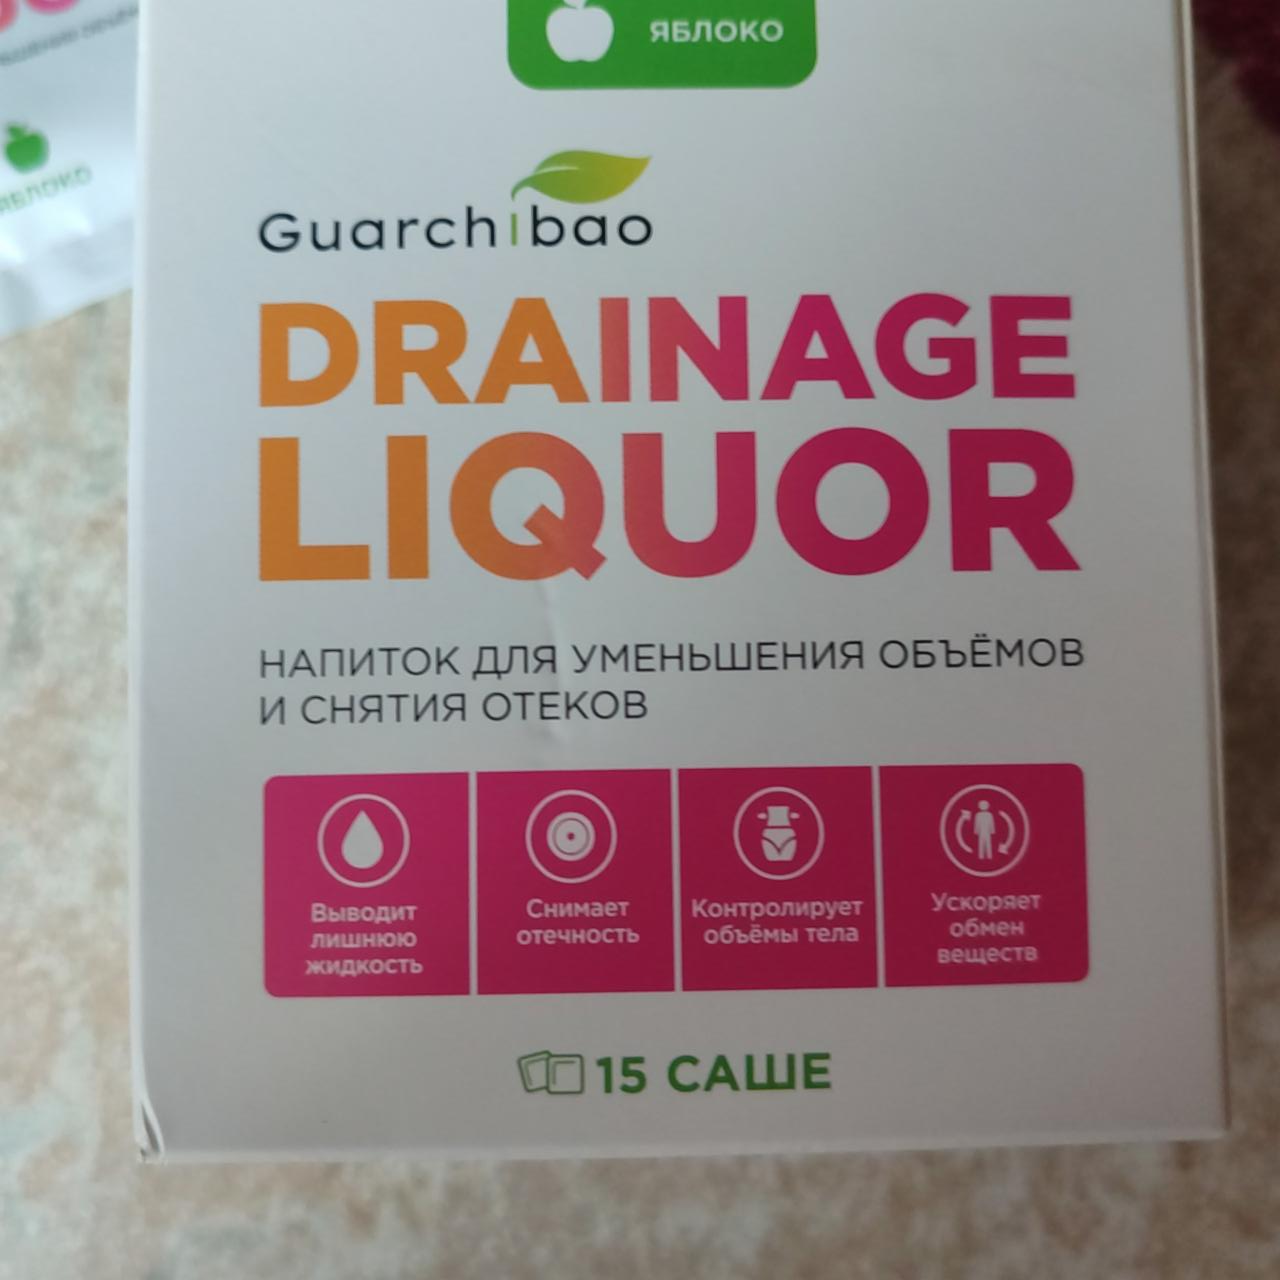 Фото - Напиток противооткатный яблоко Drainage liquor Guarchibao